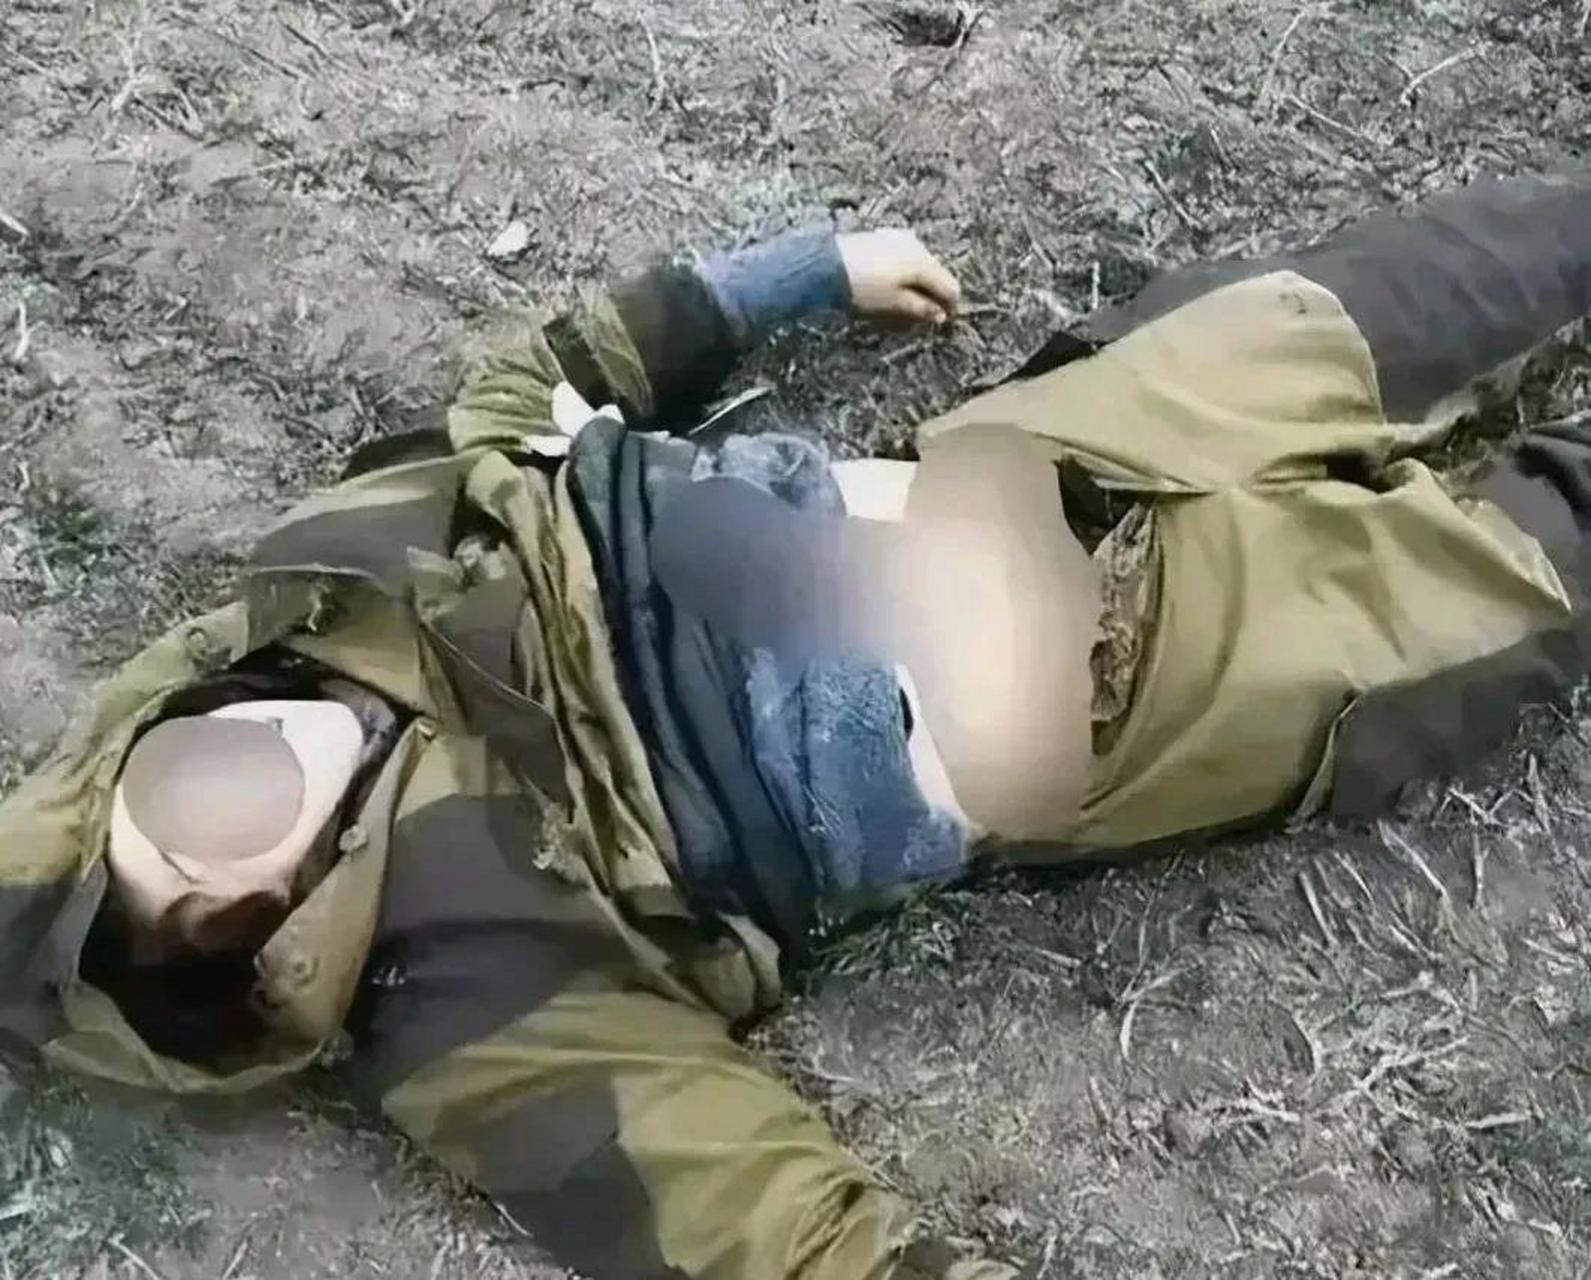 阵亡的乌军女兵裤子被解开,露出黑色的内裤,死后也没有被善待